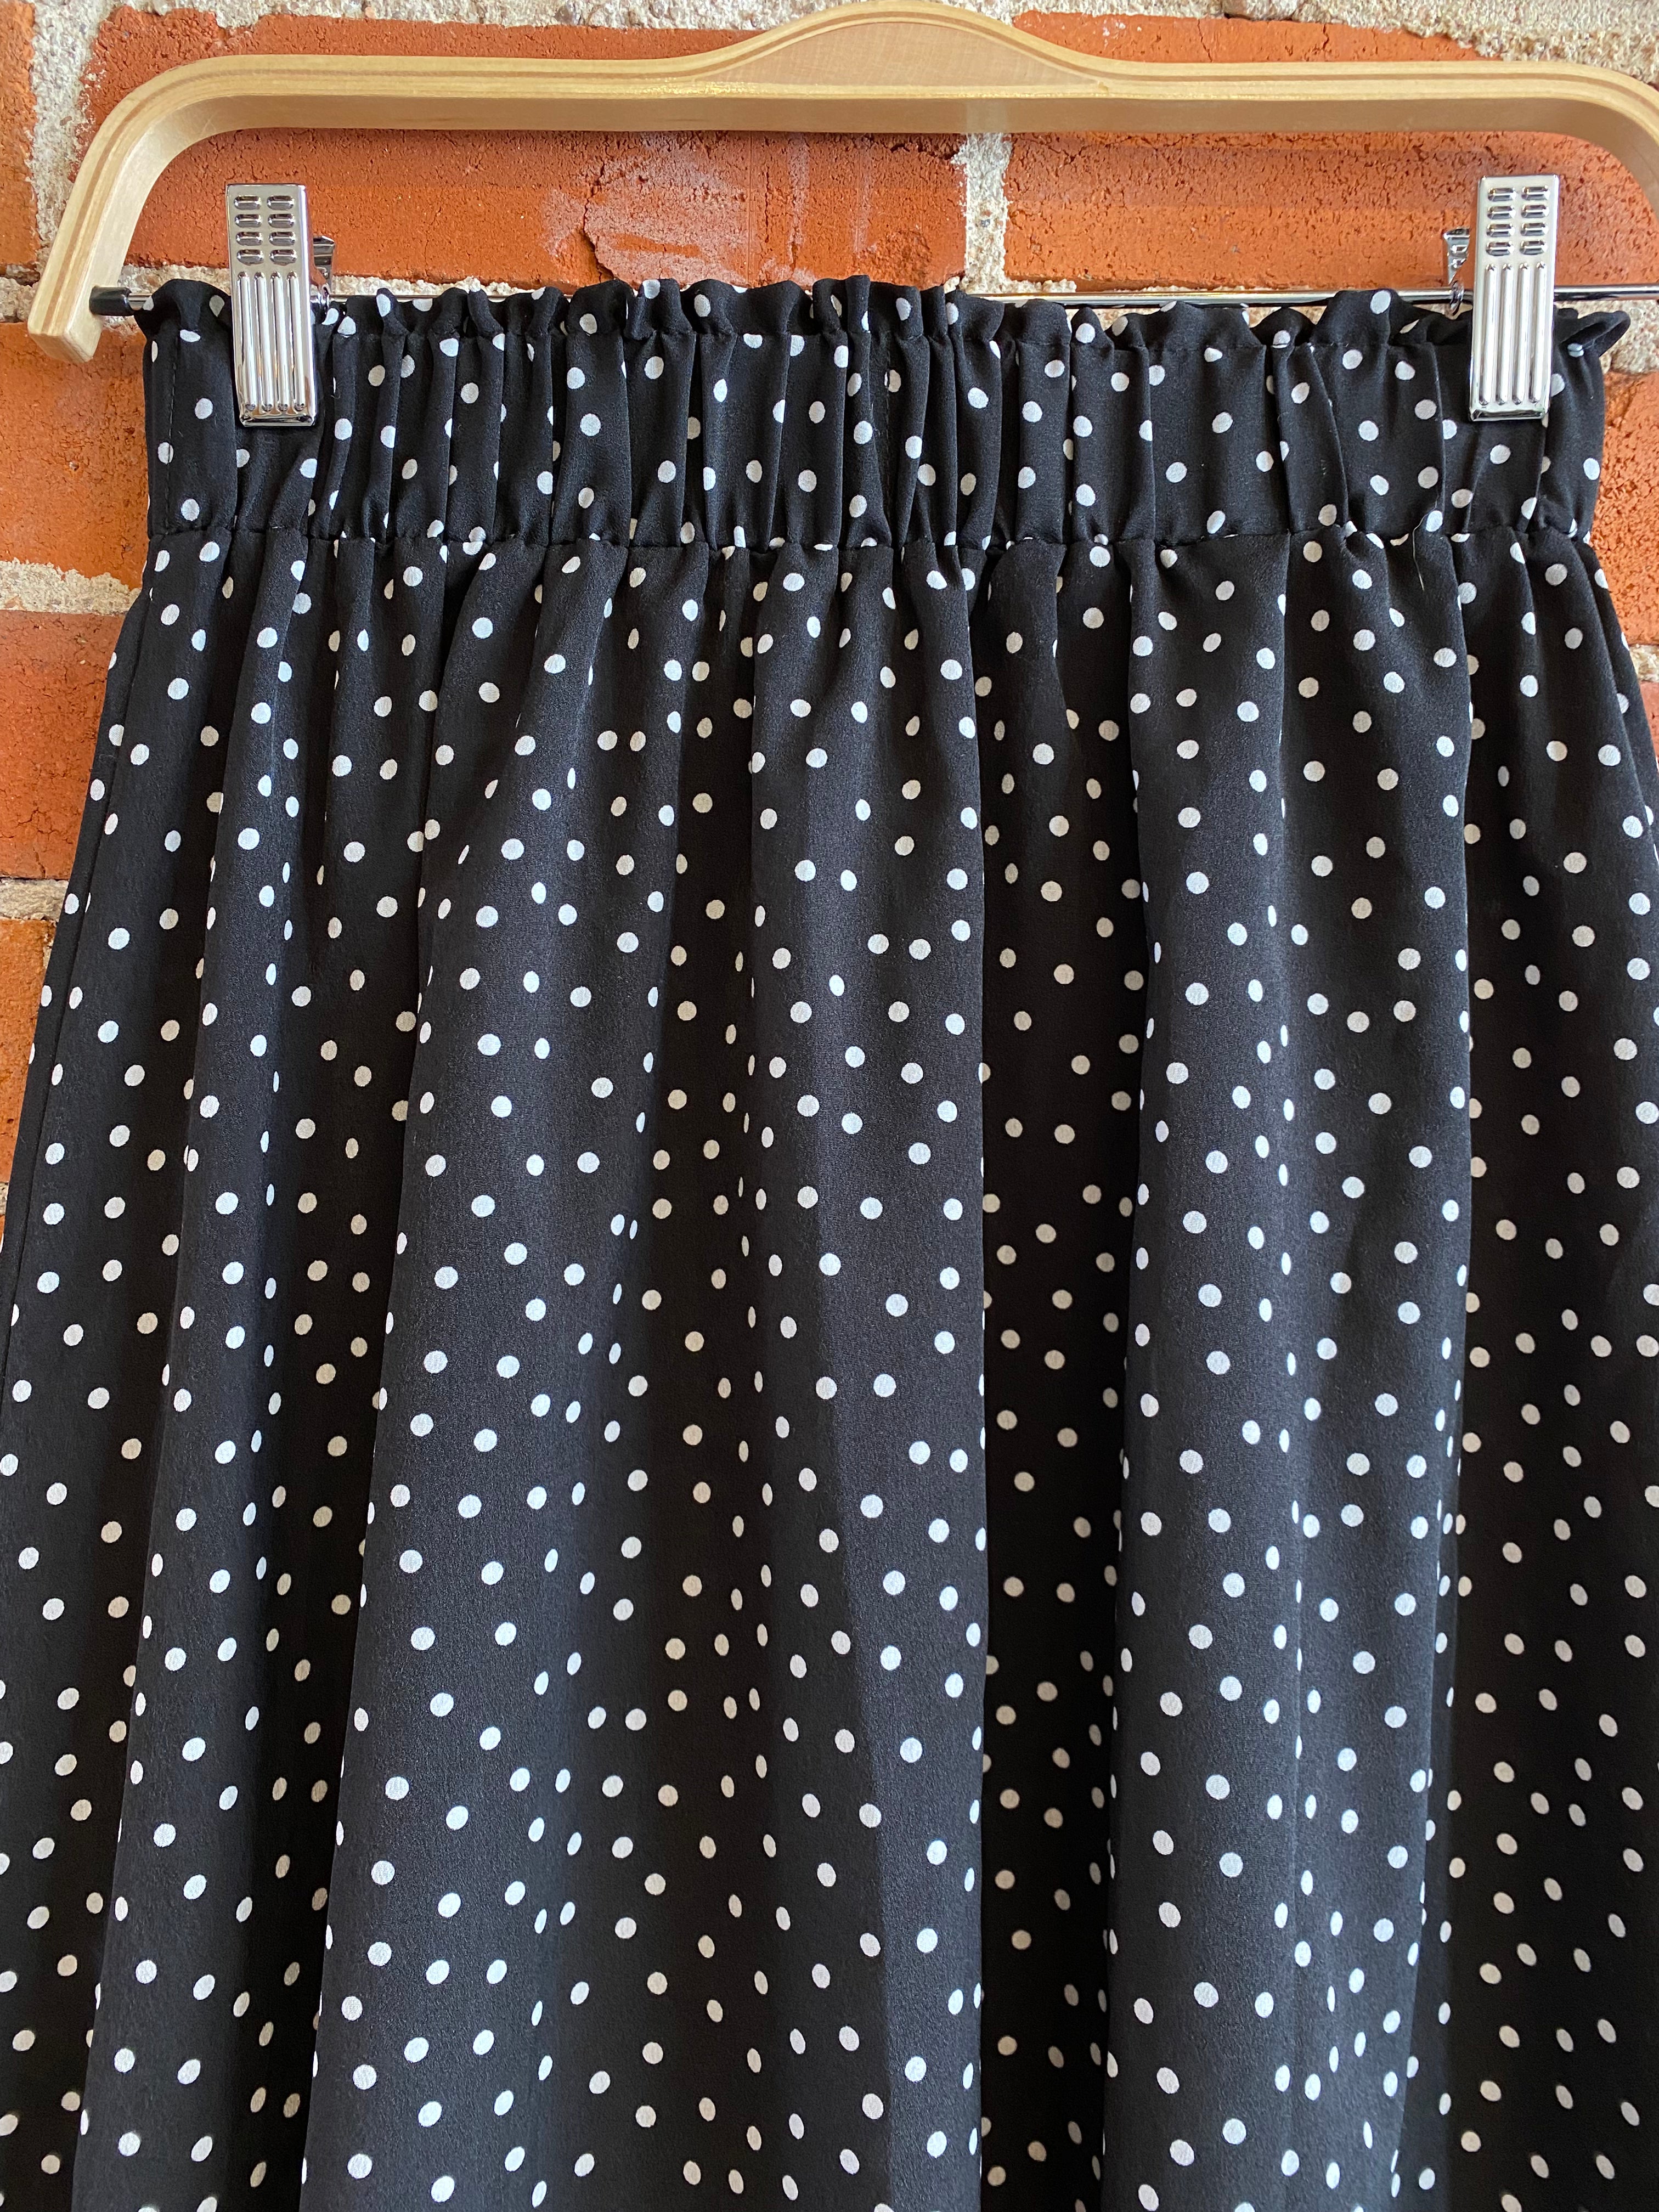 
  
  Black and white polka dot midi skirt- Size S
  
